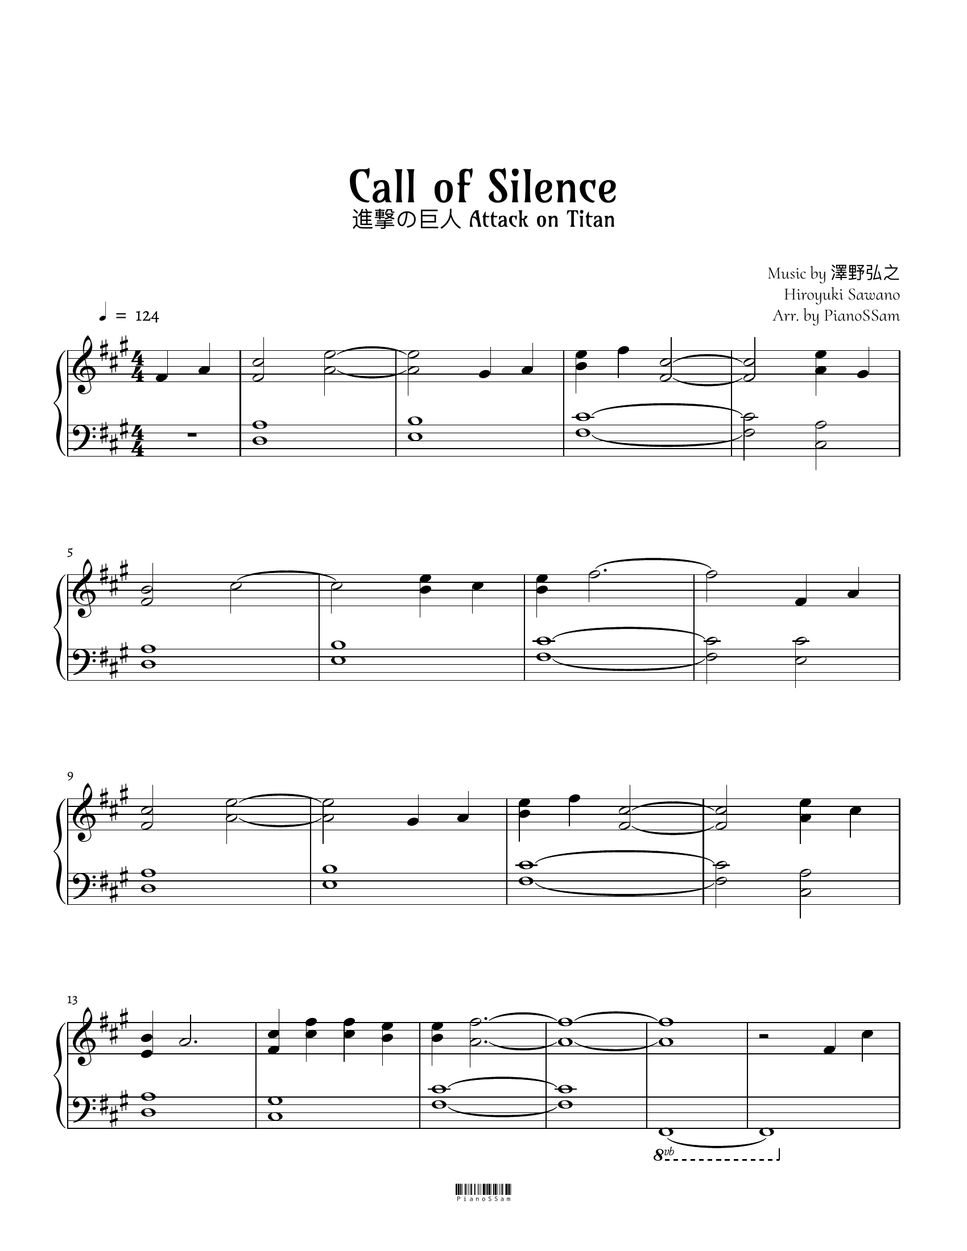 澤野弘之 - Call of Silence (進撃の巨人) by PianoSSam